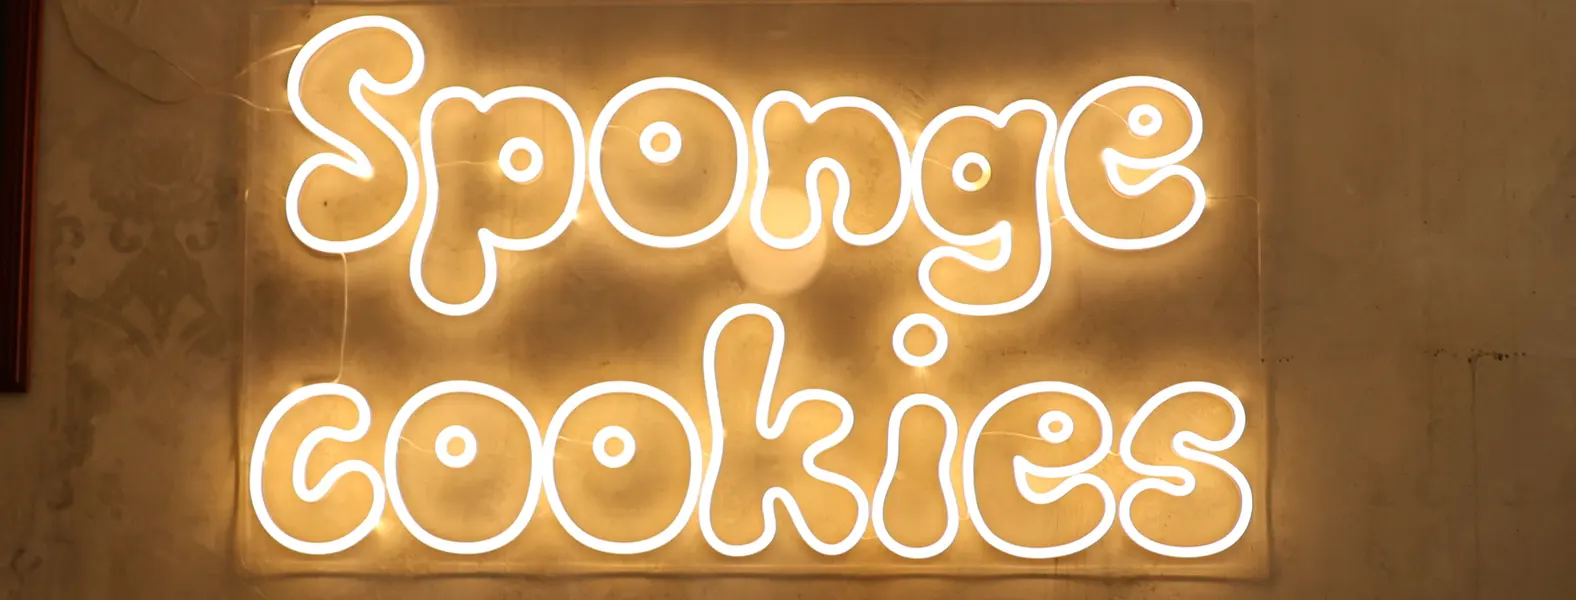 Spongecookies